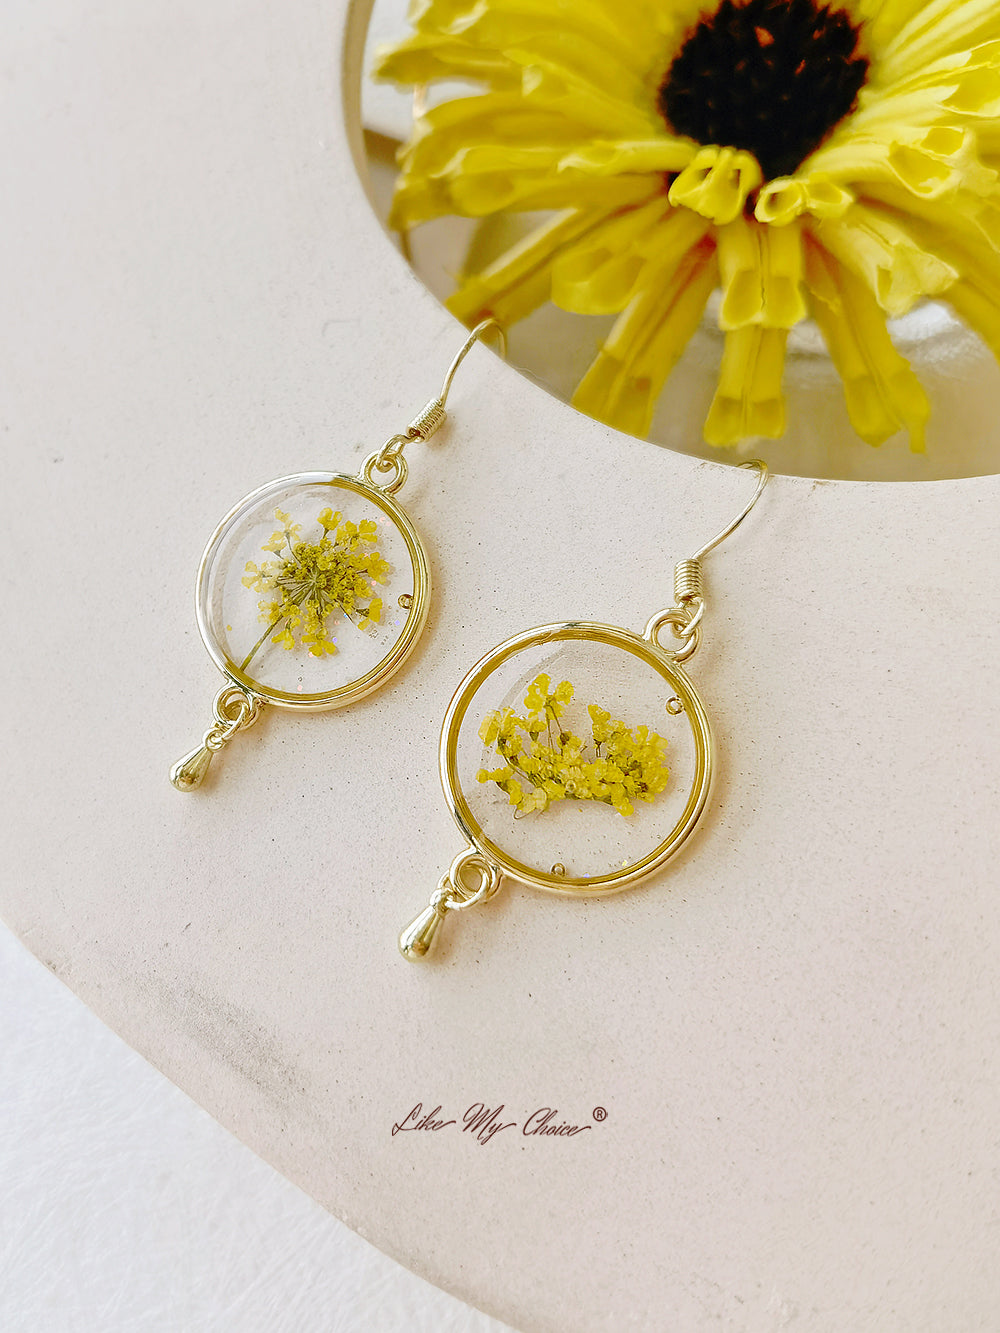 Πραγματικό σκουλαρίκι λουλουδιών Queen Annes Lace